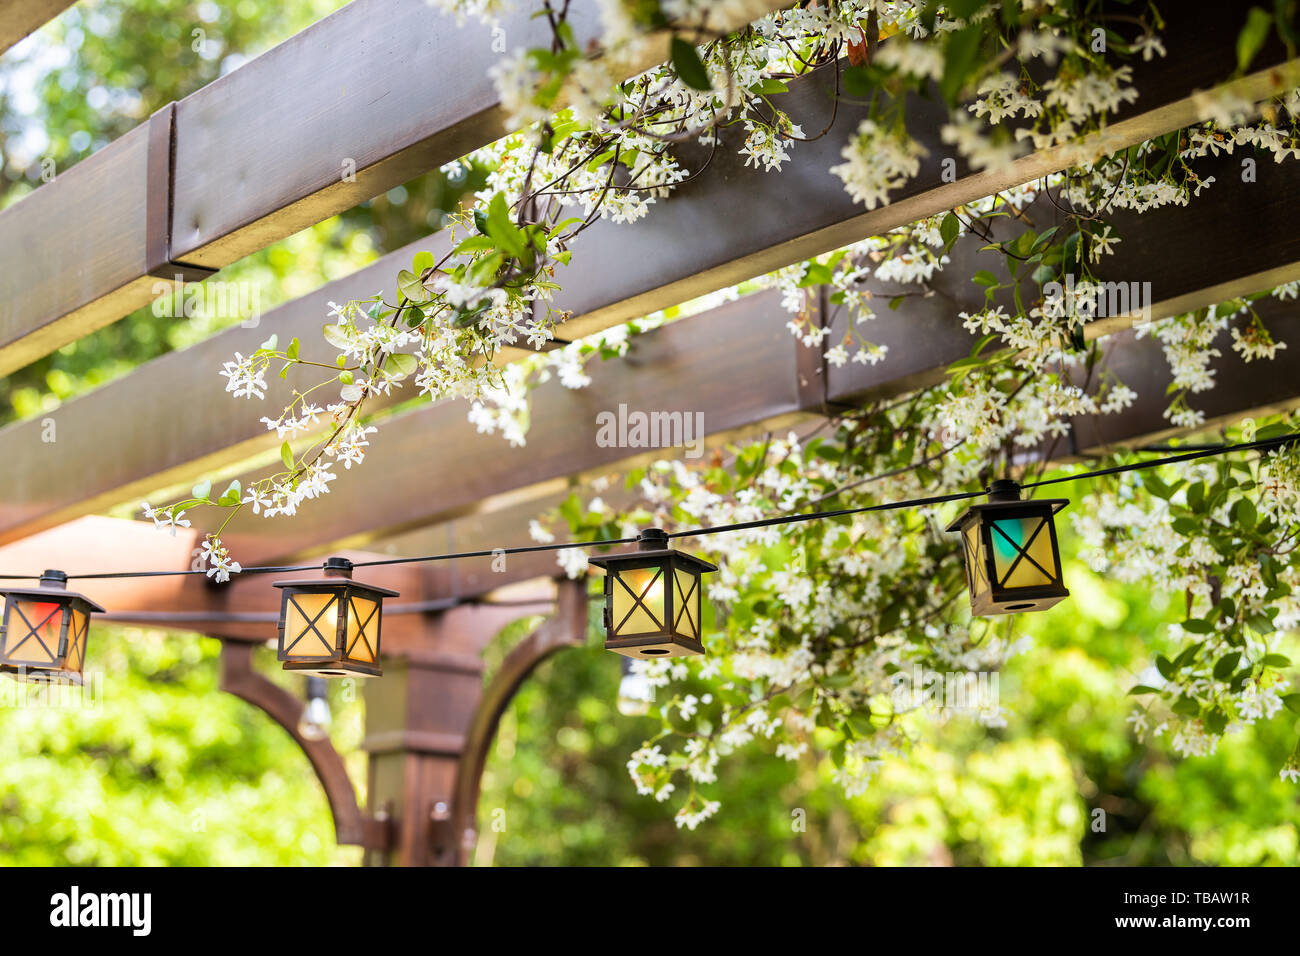 Terrasse im Frühling Garten im Hinterhof des Hauses mit Laterne Lampen leuchten hängen von Pergola Vordach Pavillon aus Holz und Pflanzen weiße Blumen Stockfoto